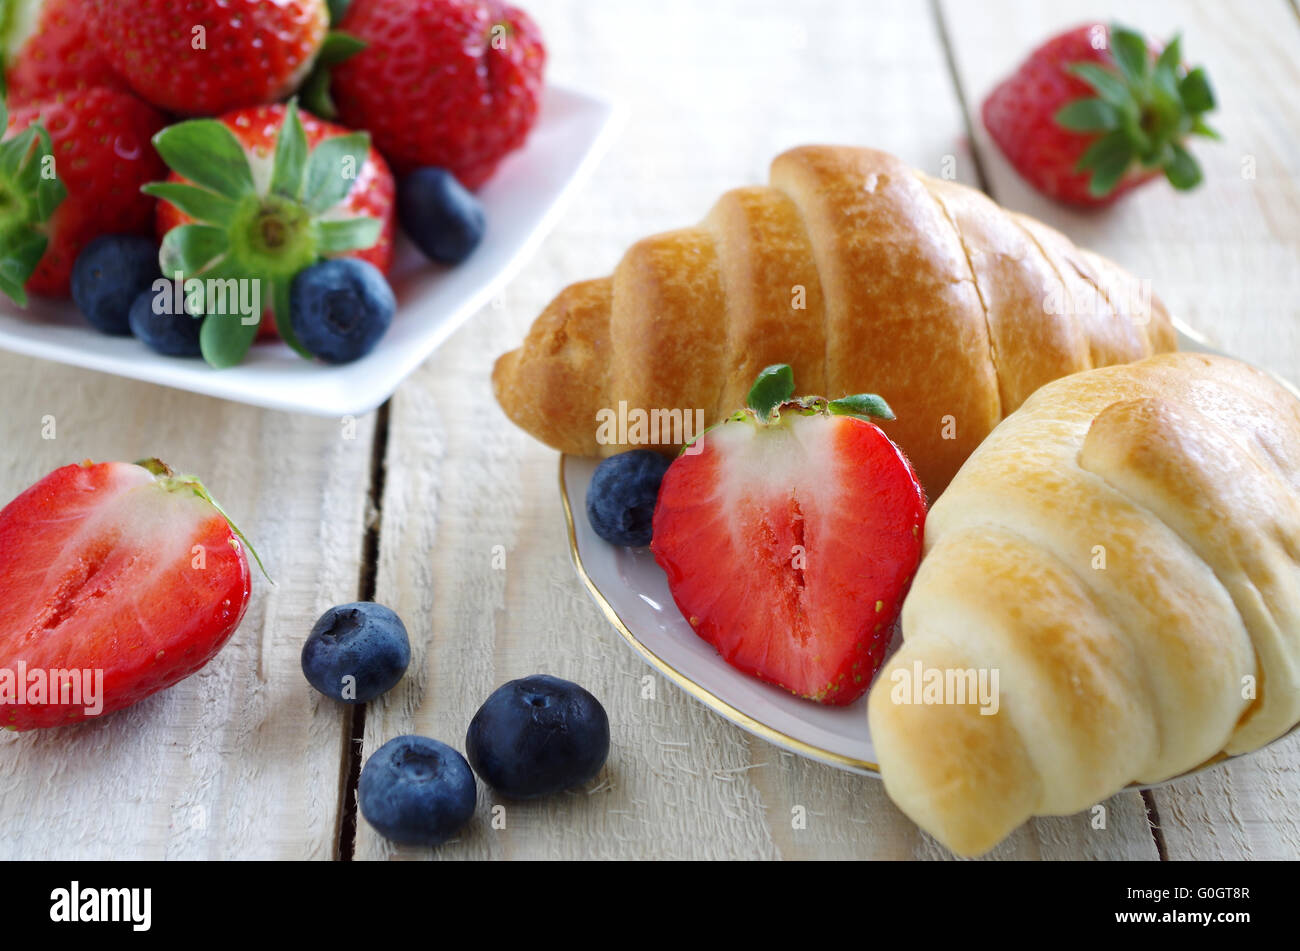 bun and berries Stock Photo